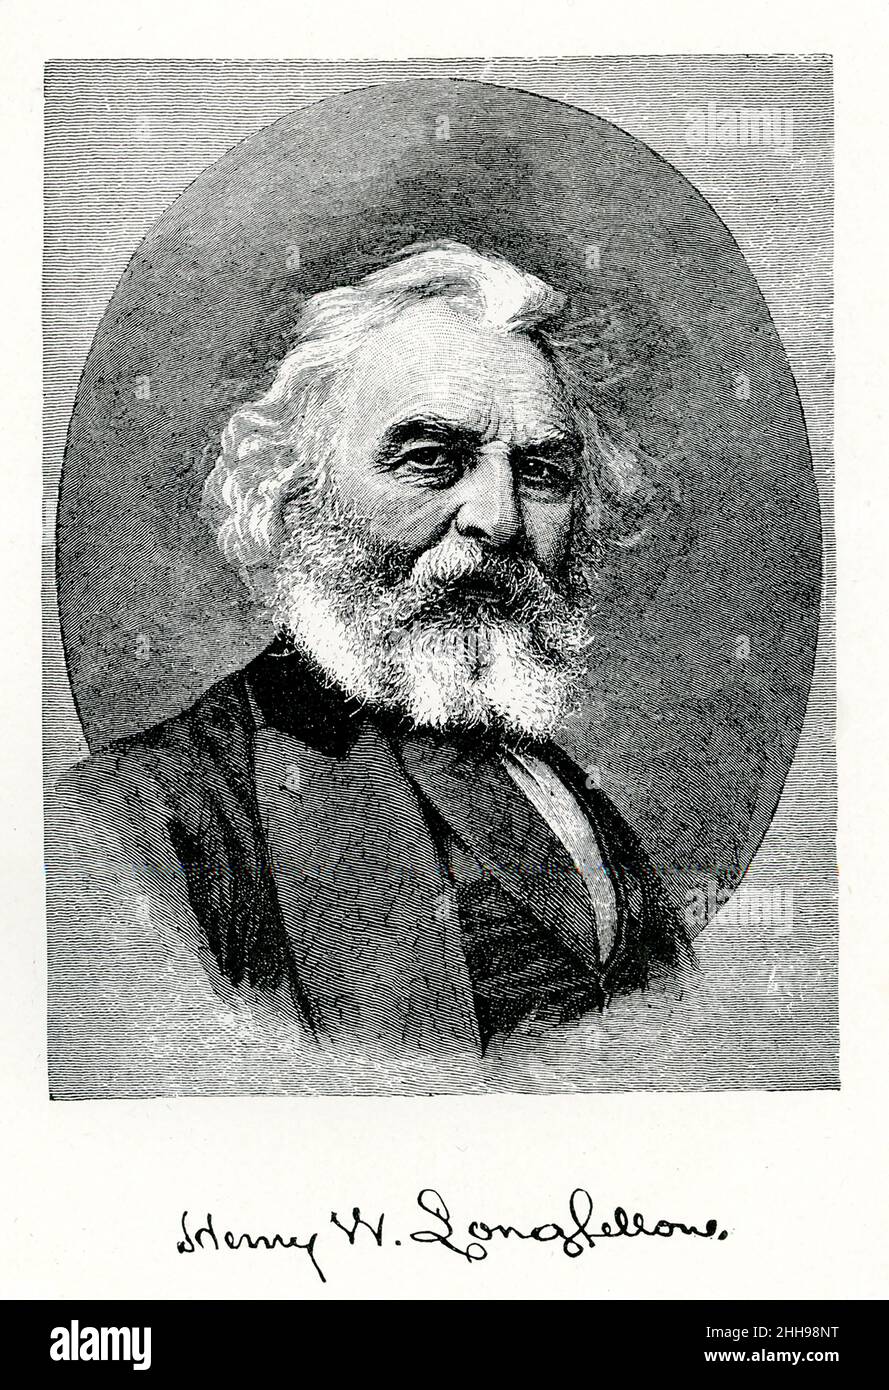 Henry Wadsworth Longfellow (1807-1882) war ein amerikanischer Dichter und Pädagoge. Zu seinen bekanntesten Werken gehören „Paul Revere's Ride“, „Hiawatha“ und „Evangeline“. Diese Abbildung stammt aus dem Jahr 1891. Stockfoto